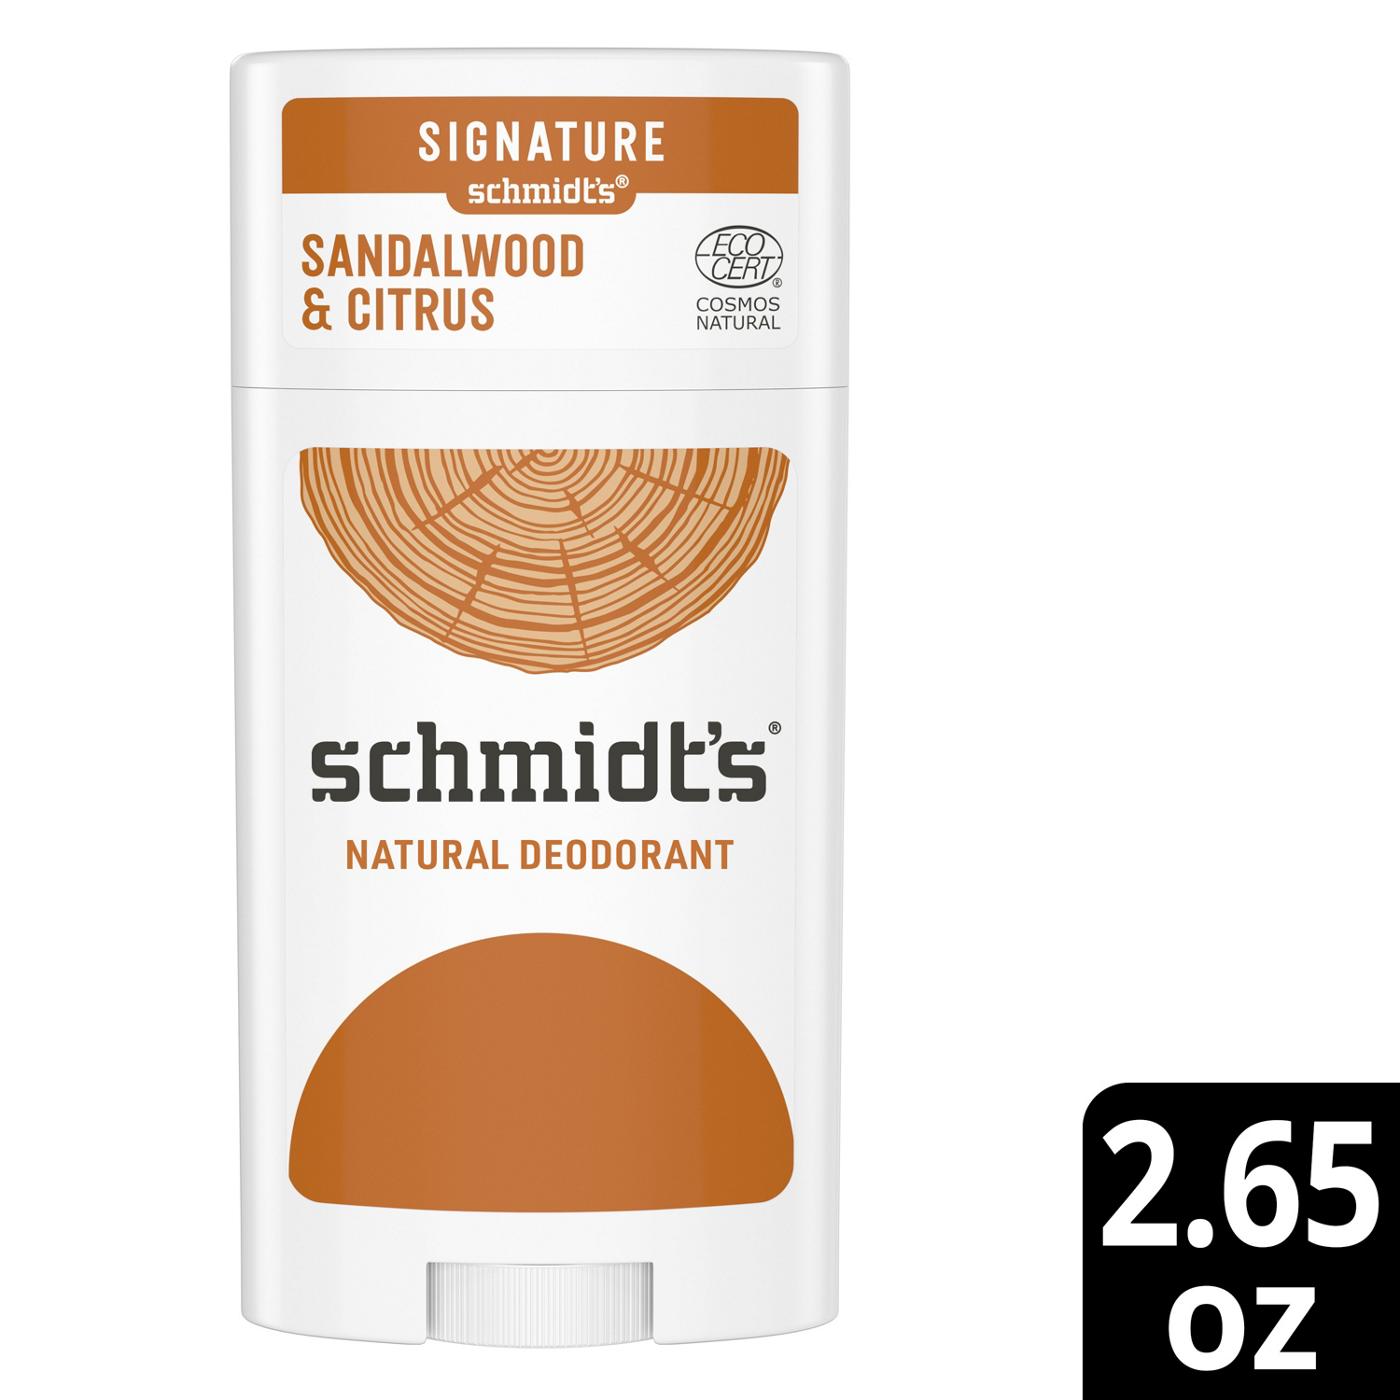 Schmidt's Aluminum Free Natural Deodorant - Sandalwood & Citrus; image 4 of 6